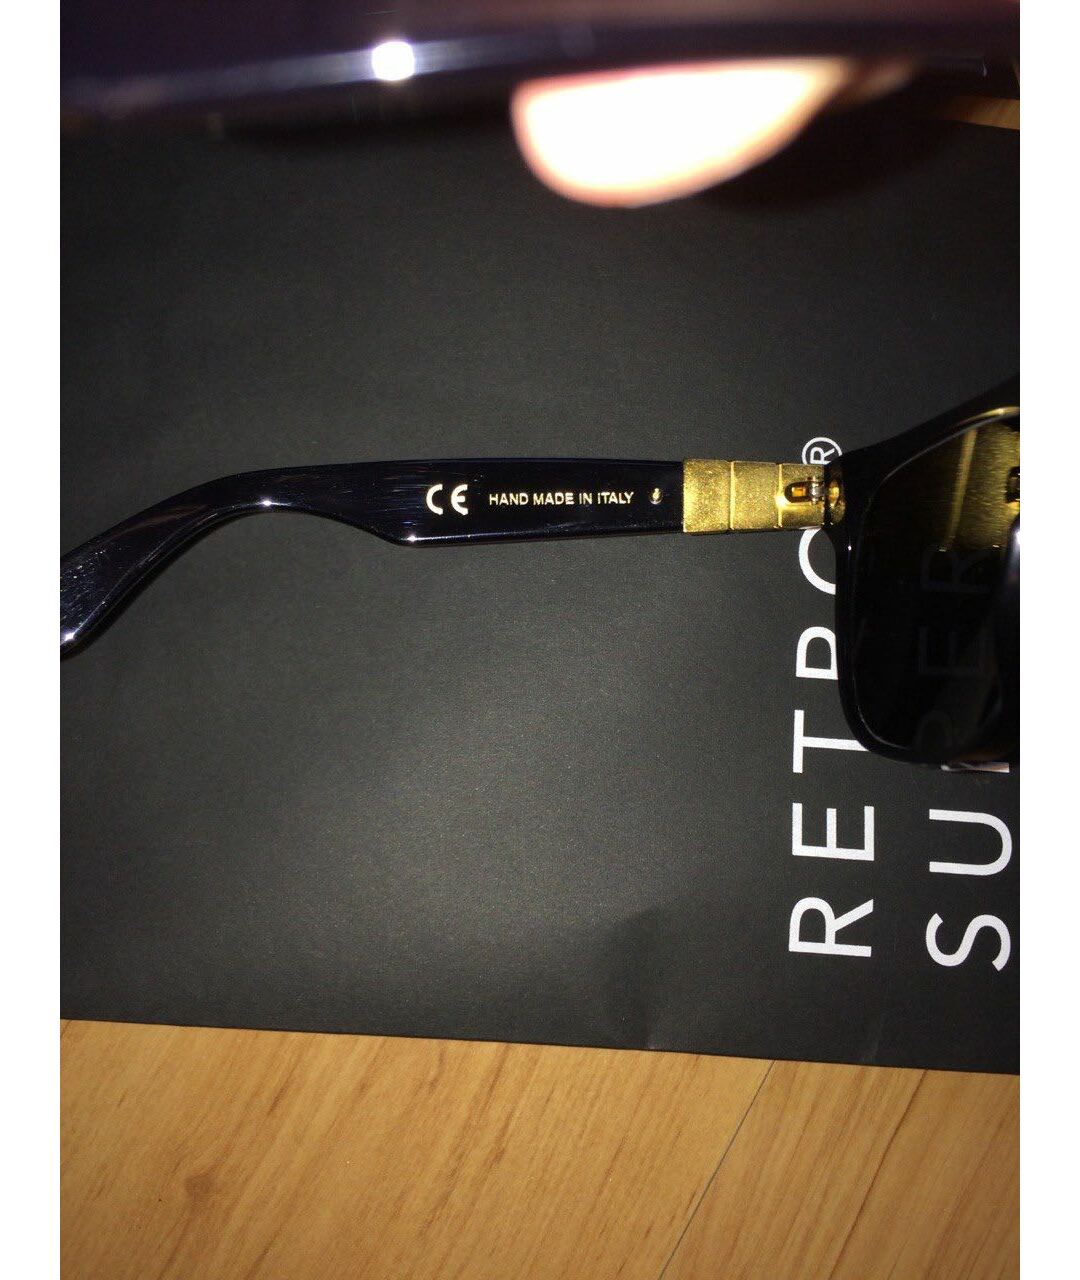 RETROSUPERFUTURE Черные пластиковые солнцезащитные очки, фото 5